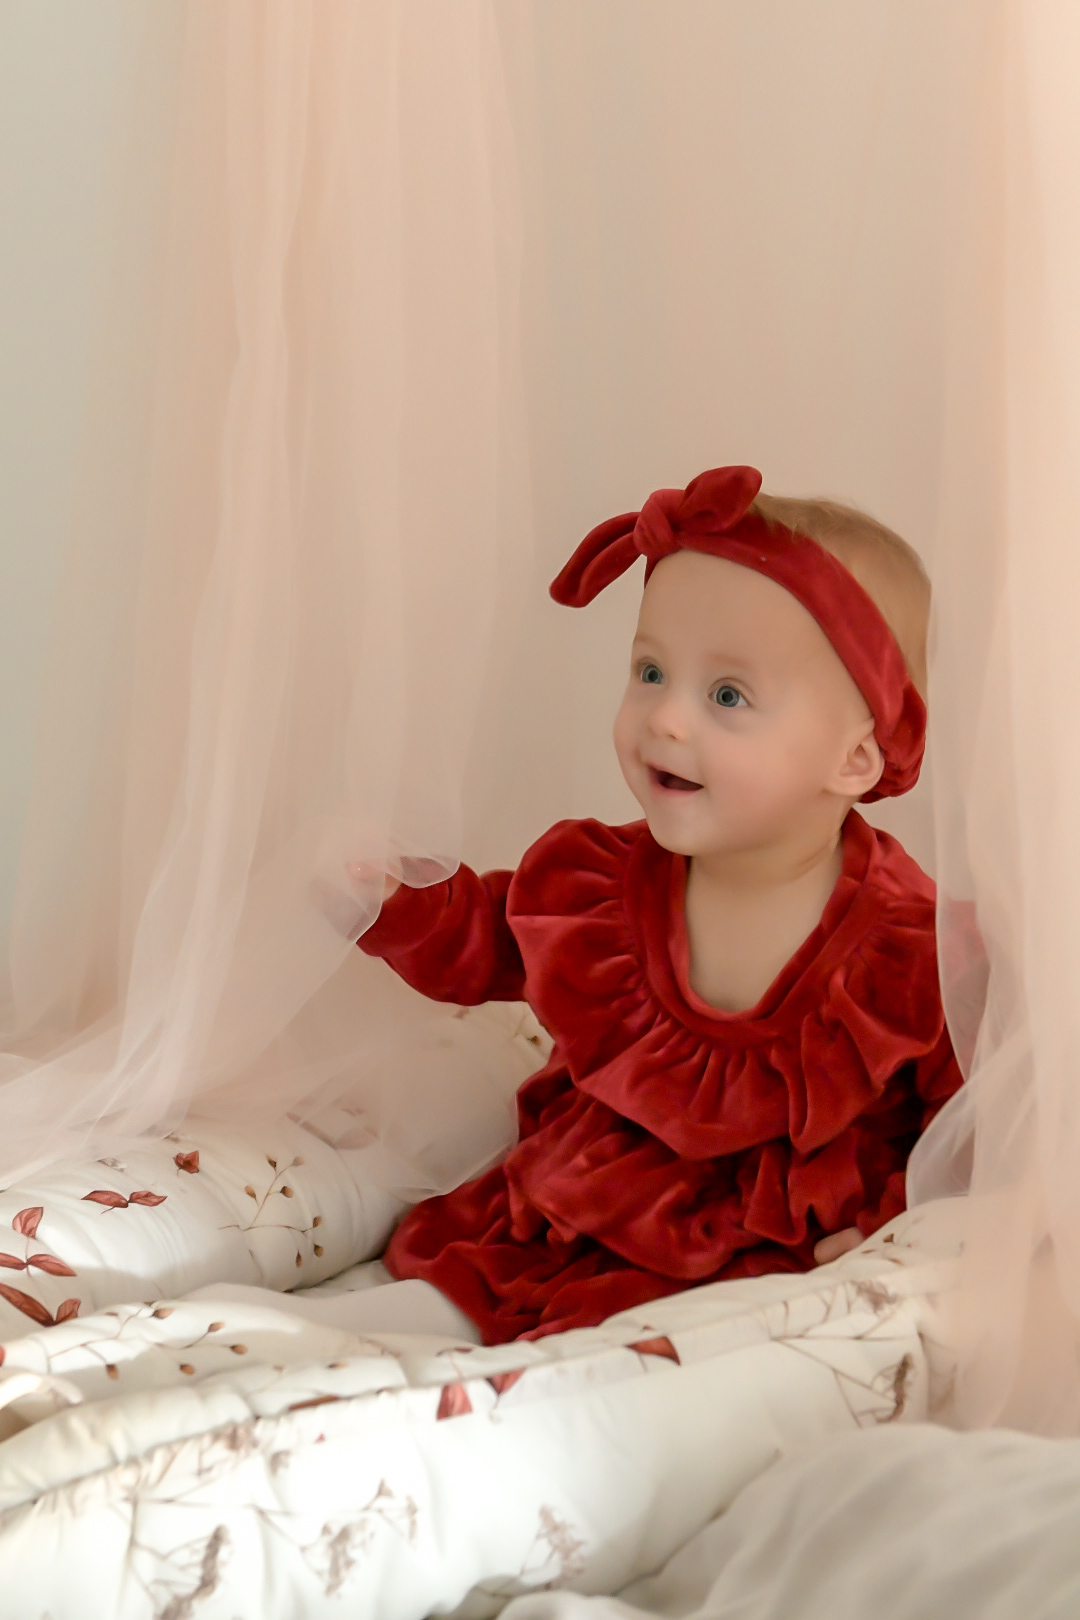 red velvet dresses for children, red velvet dresses for children